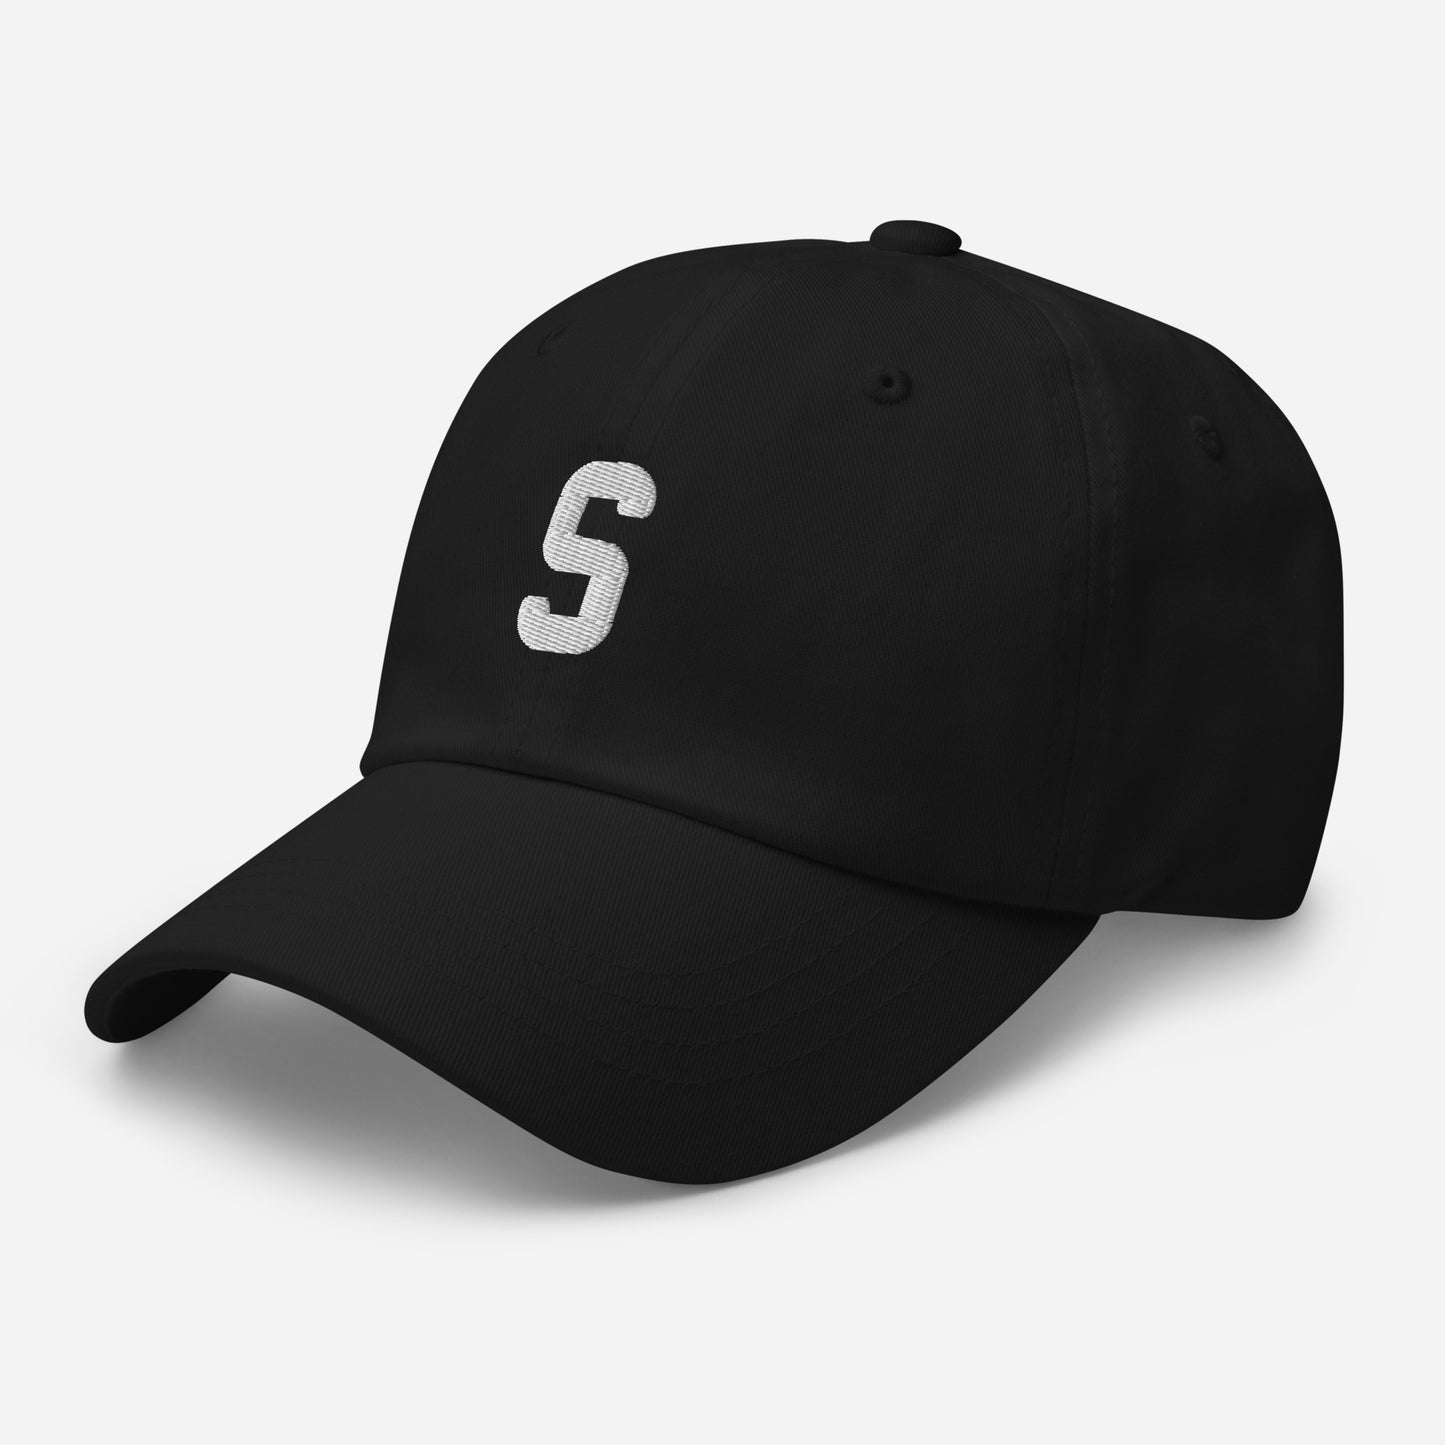 S -  Heritage hat